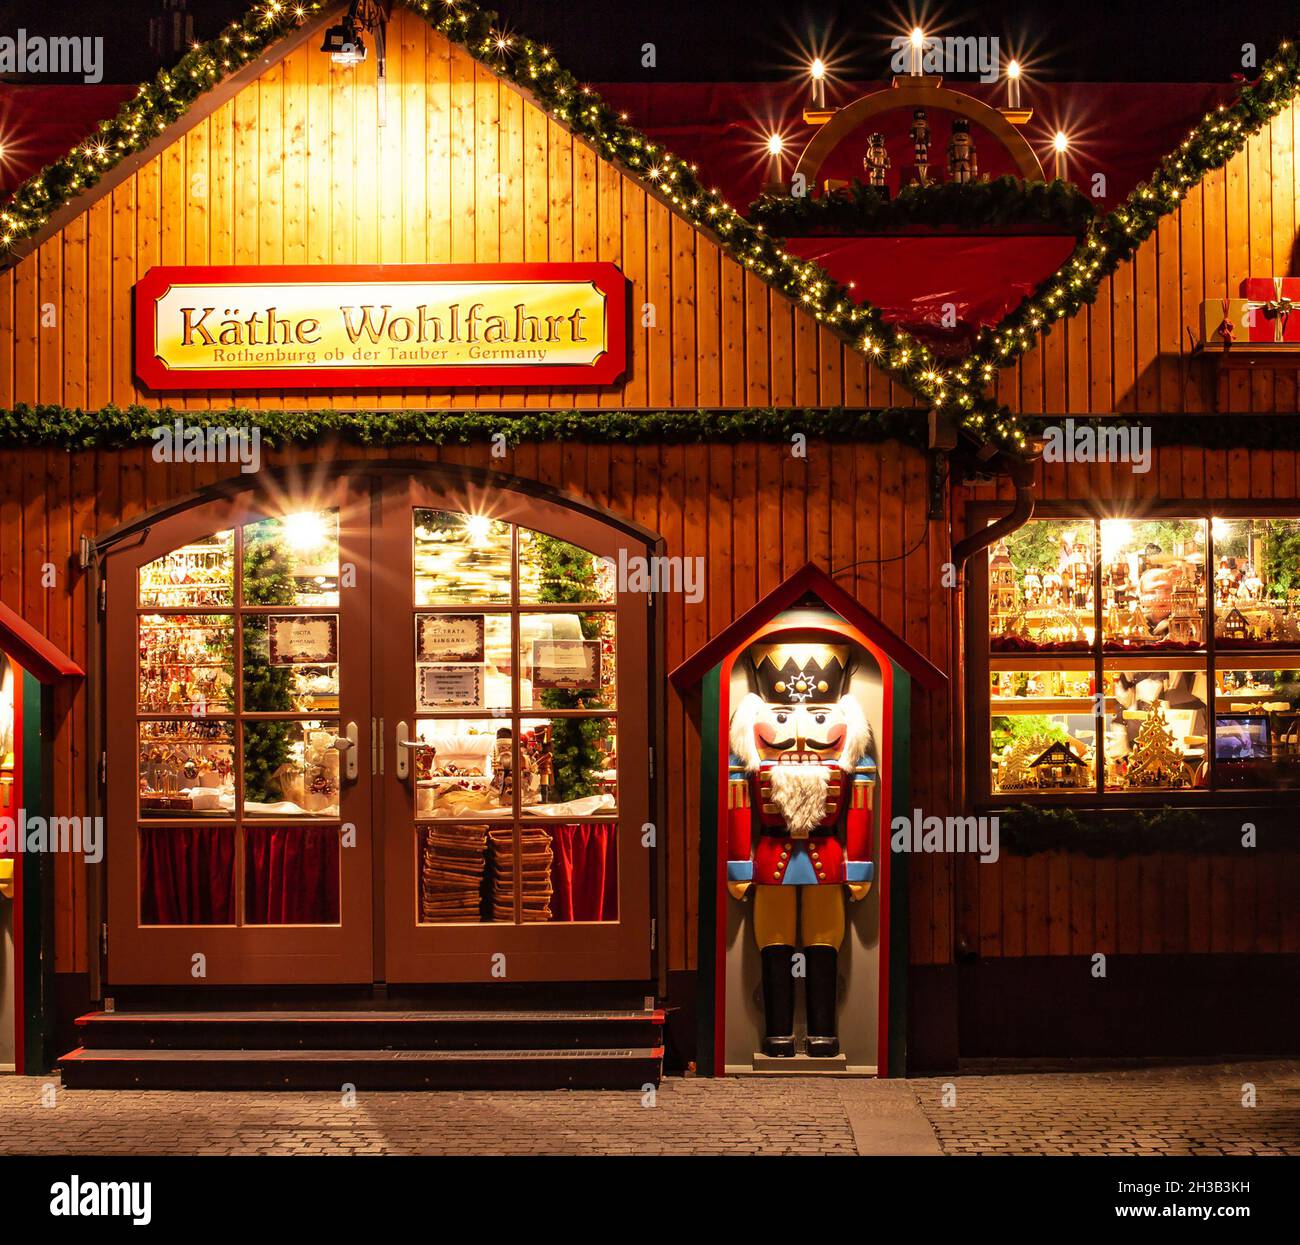 Negozio Käthe Wohlfahrt che mostra un assortimento di ornamenti natalizi tradizionali tedeschi presso il famoso mercatino di natale (Christkindlmarkt) Merano, Alto Adige Foto Stock